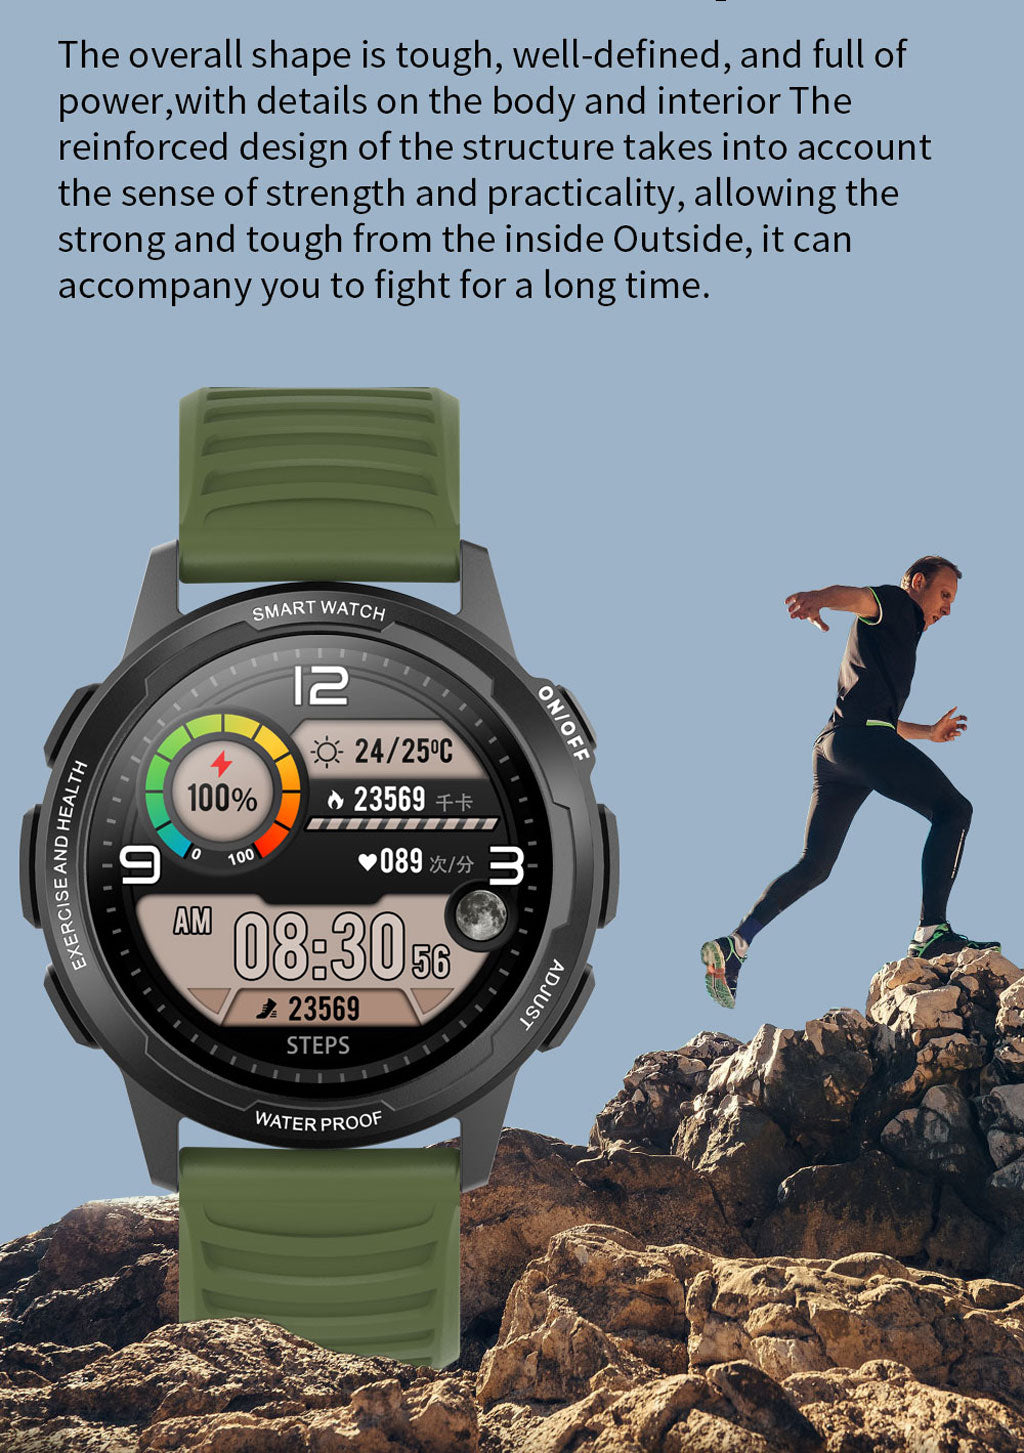 Viedefit-Rock-1-Smart-Watch-high-end-outdoor